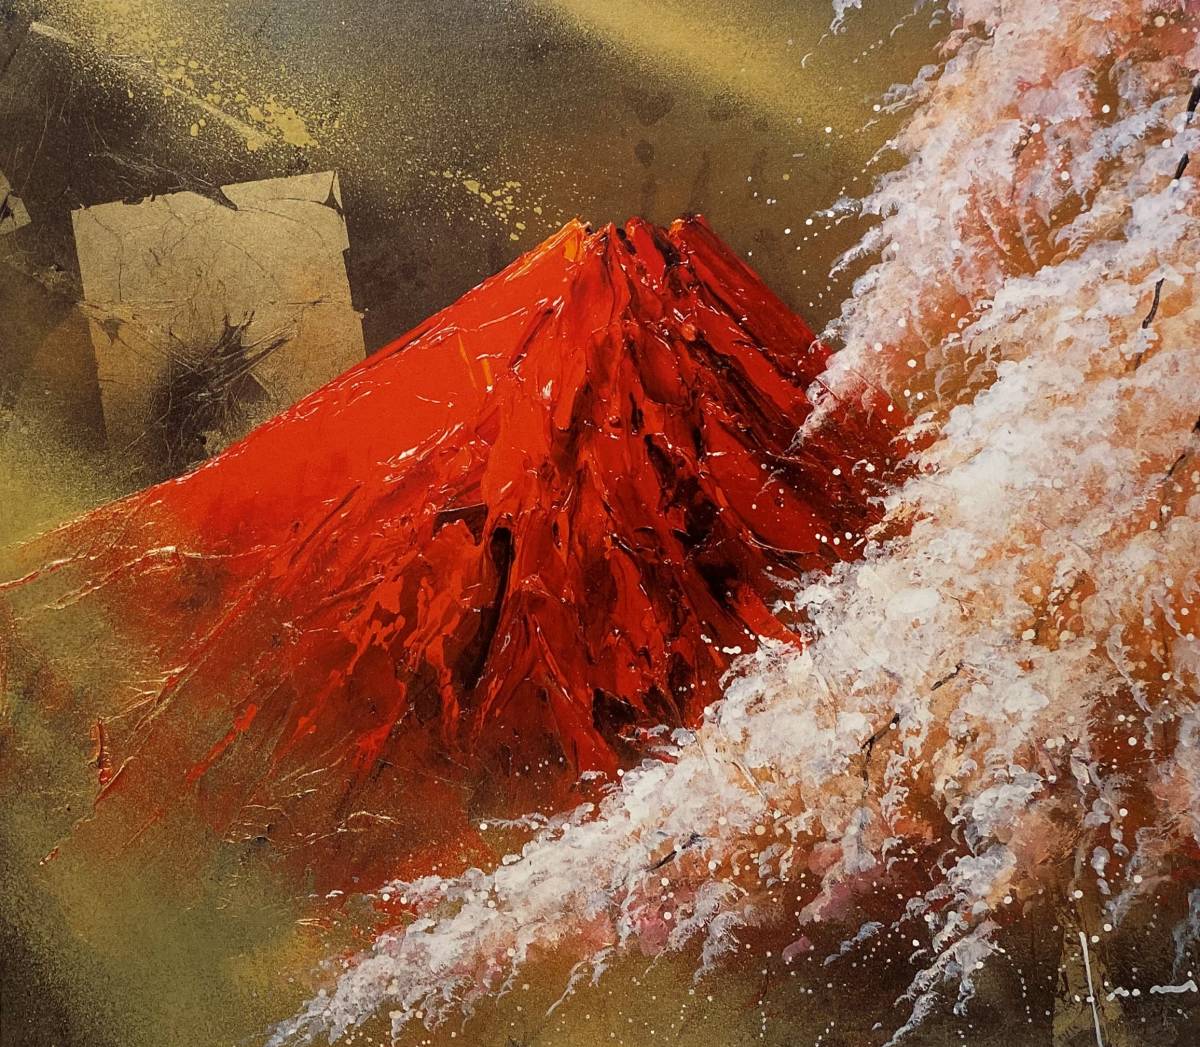 Hiroki Tachikawa, Fleurs de cerisier Fuji rouges, D'une rare collection d'art, Nouveau cadre de haute qualité, Cadre mat inclus, livraison gratuite, Peinture, Peinture à l'huile, Nature, Peinture de paysage